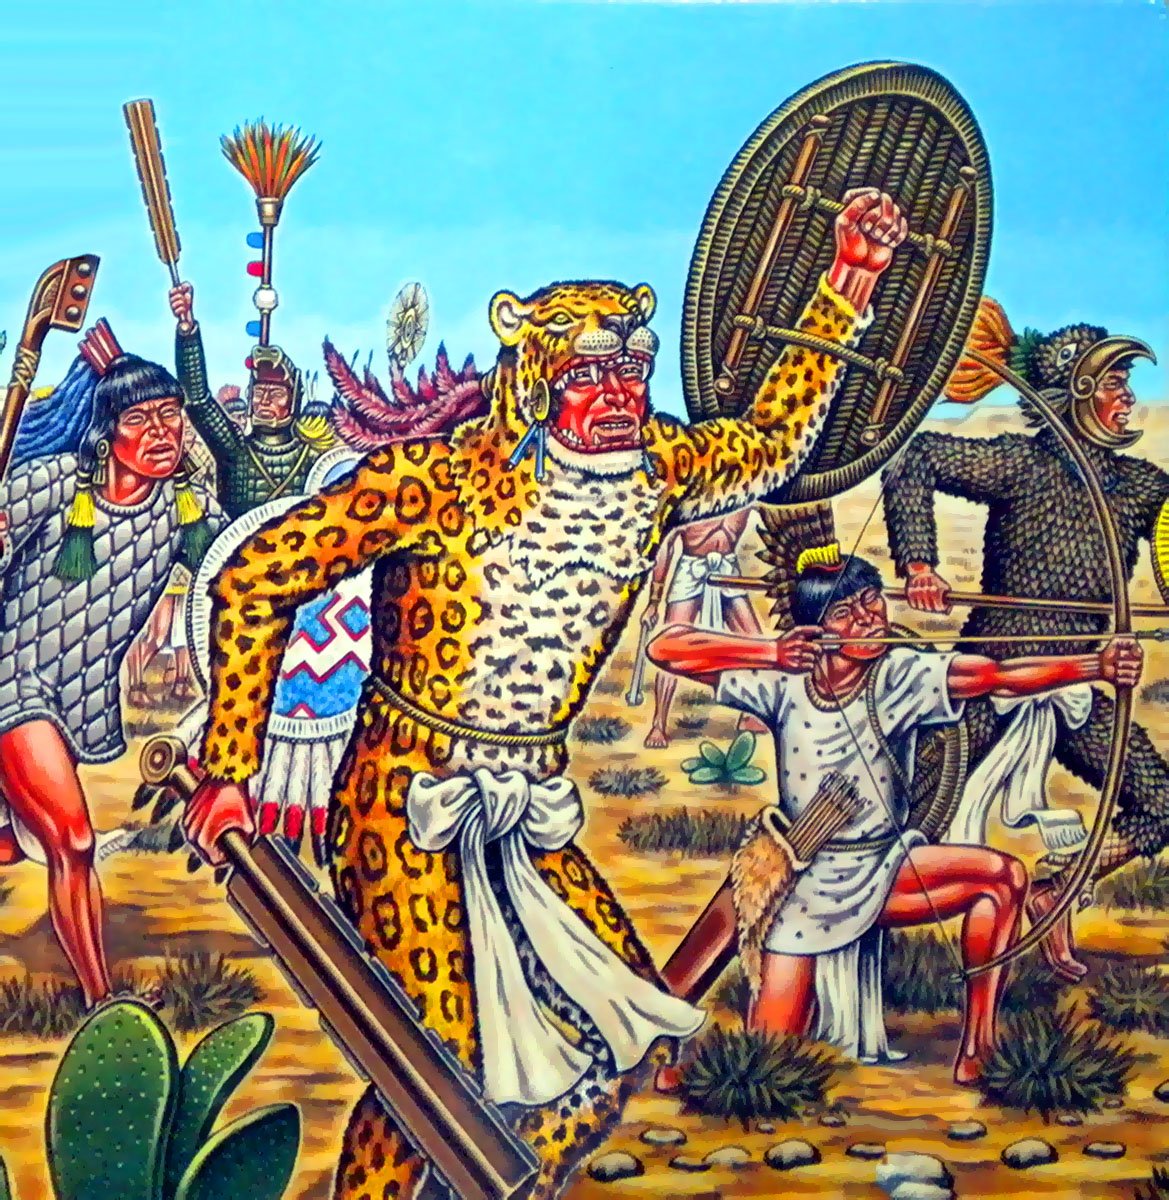 マスターg ジャガーの戦士 オセロメー アステカ帝国 メソアメリカ